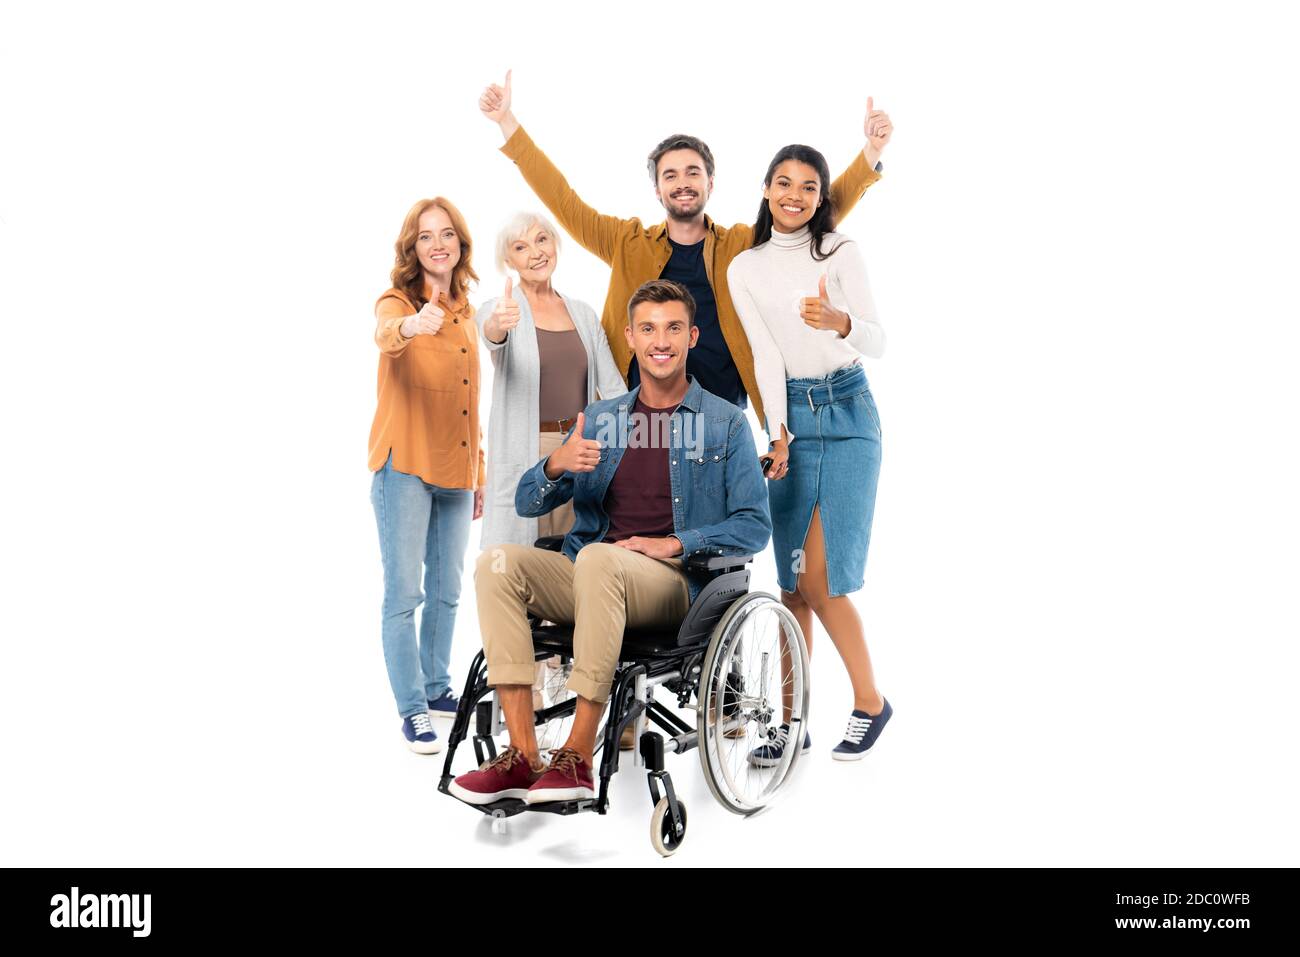 Souriant, des personnes multiethniques se présentent comme un homme proche en fauteuil roulant arrière-plan blanc Banque D'Images